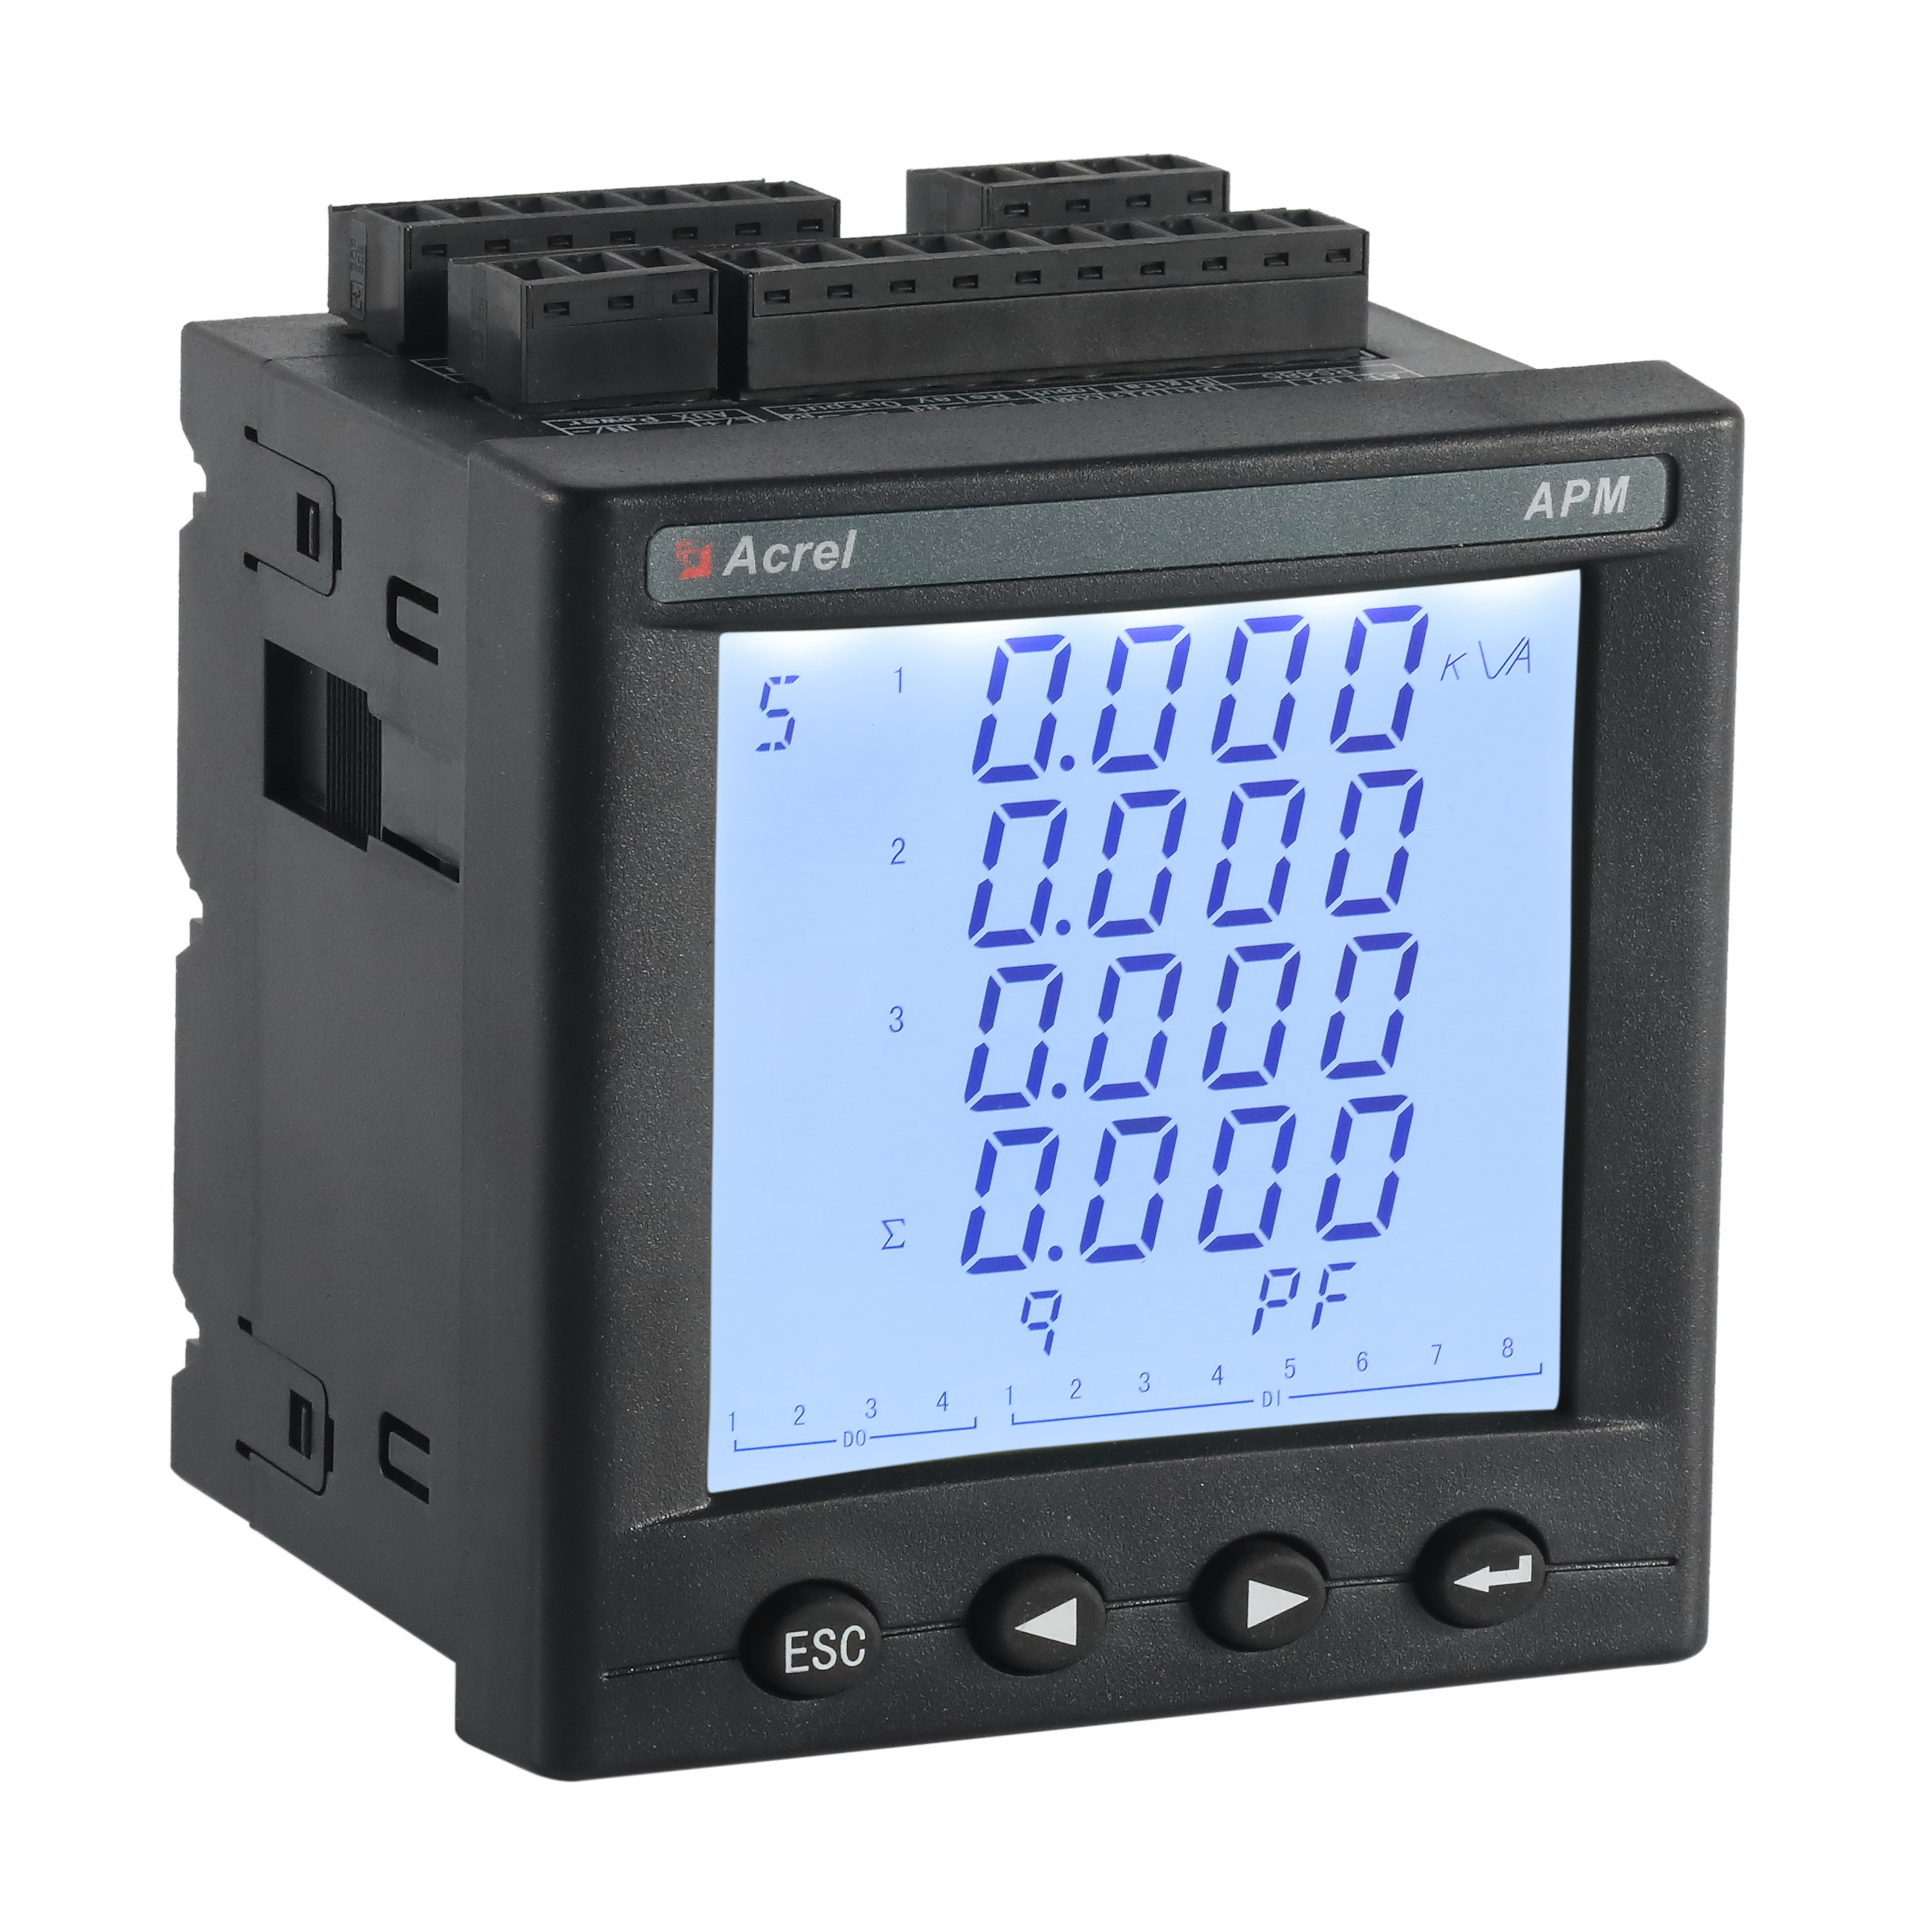 PROFIBUS-DP总线通讯电表厂家 多用于过程自动控制